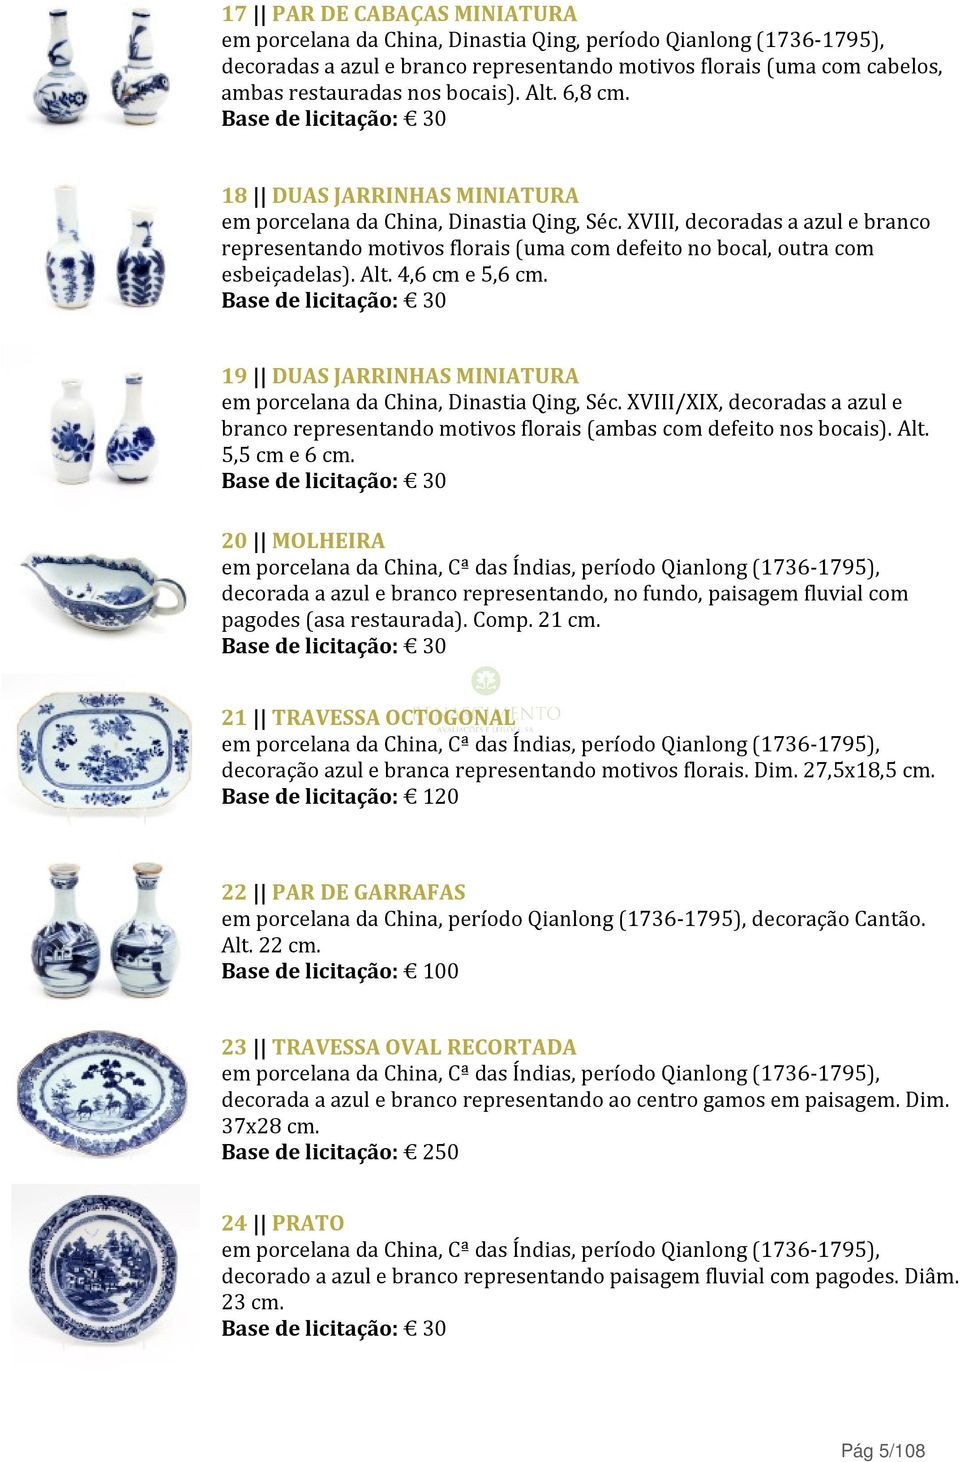 Alt. 4,6 cm e 5,6 cm. 19 DUAS JARRINHAS MINIATURA em porcelana da China, Dinastia Qing, Séc. XVIII/XIX, decoradas a azul e branco representando motivos florais (ambas com defeito nos bocais). Alt.